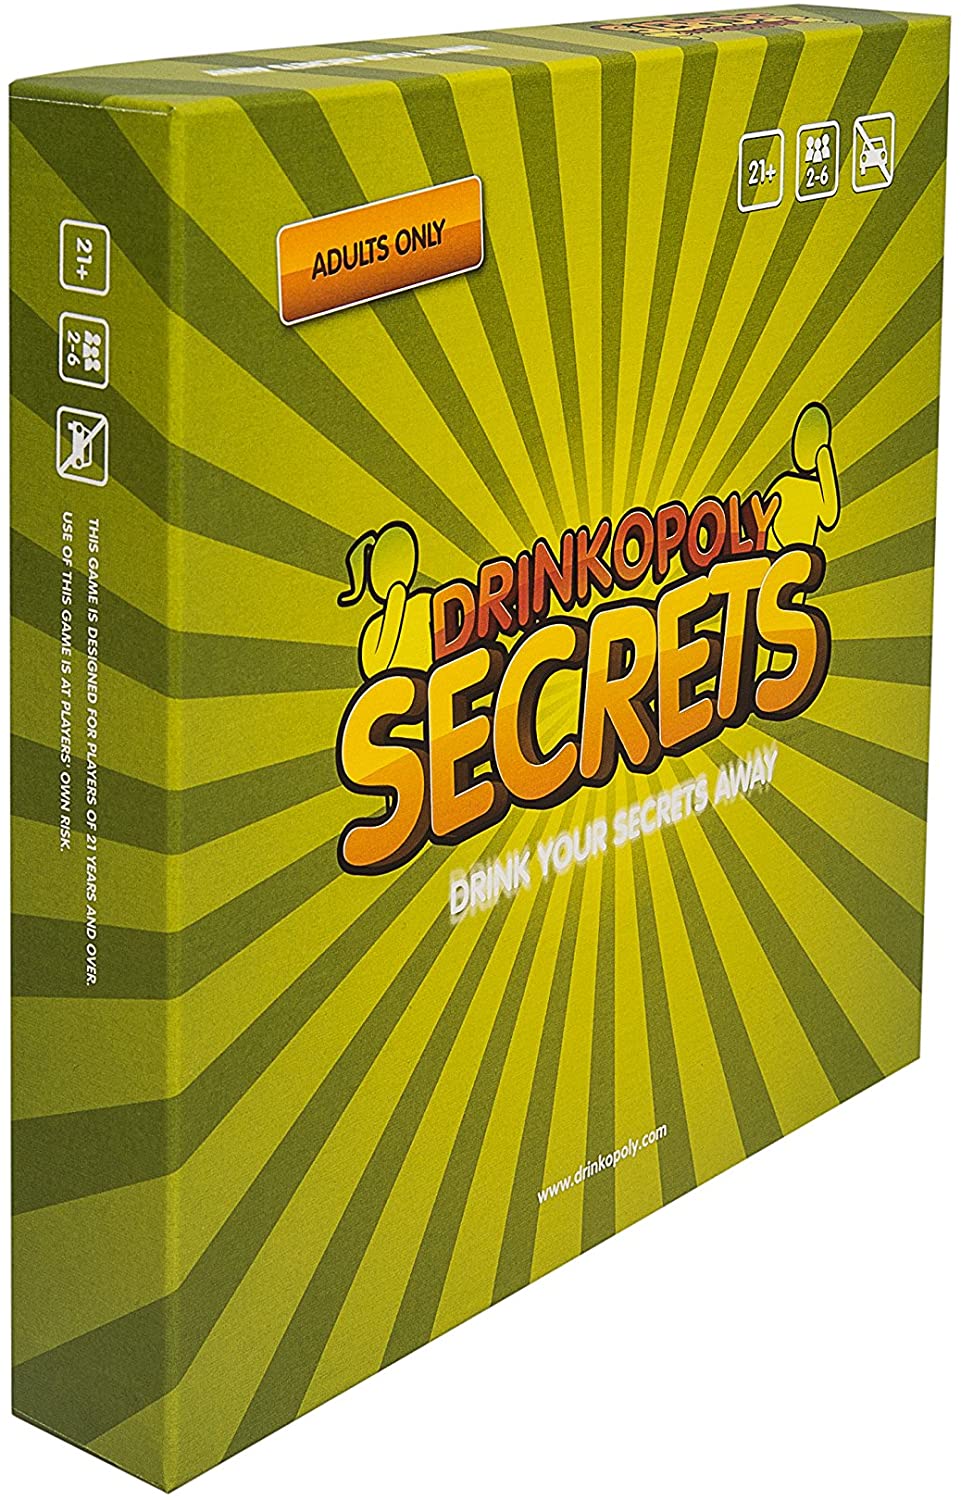 Drinkopoly: Secrets